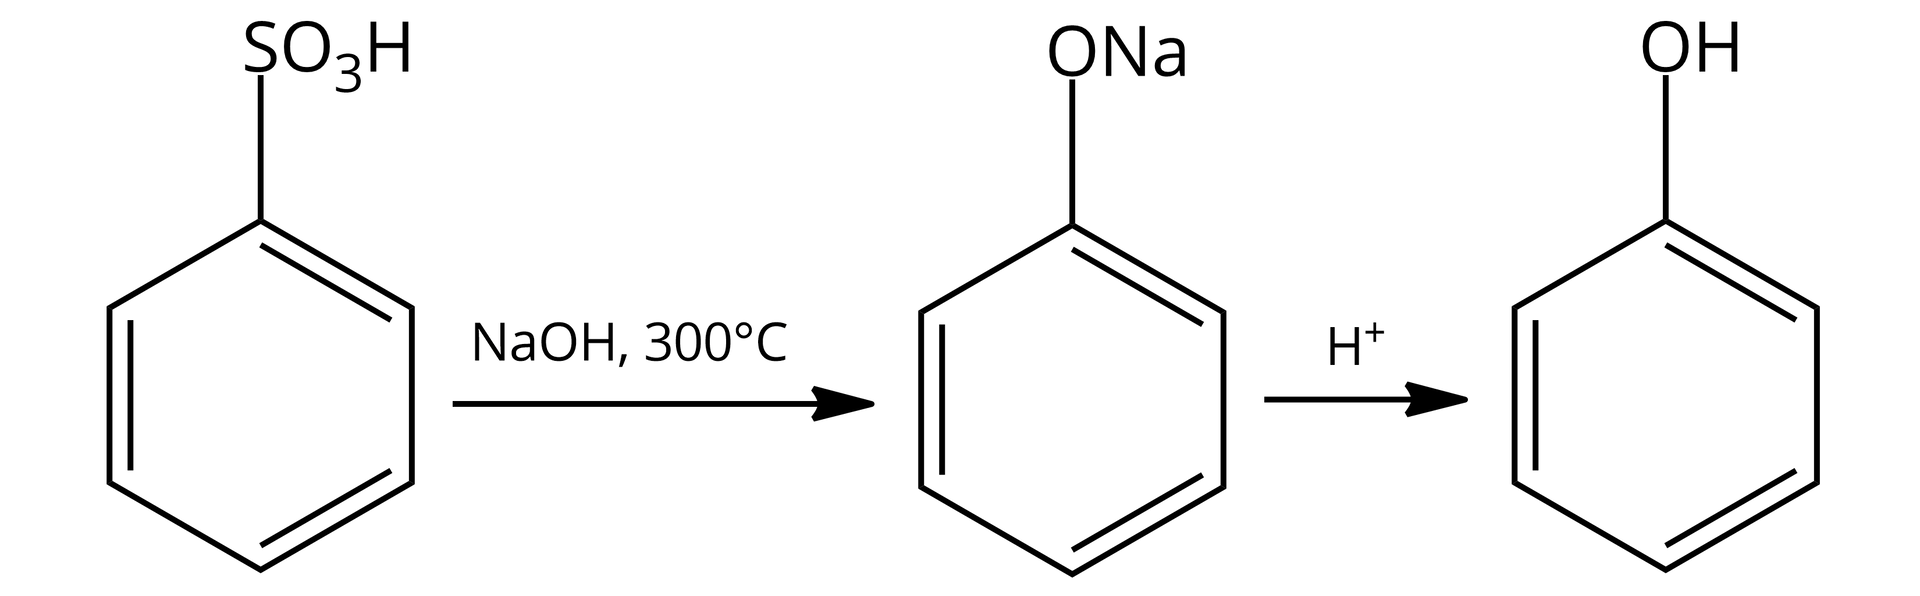 Na ilustracji jest równanie: jedna cząsteczka kwasu benzenosulfonowego pod wpływem jednej cząsteczki wodorotlenku sodu oraz temperatury 300 stopni Celsjusza daje jedną cząsteczkę fenolanu sodu, która w obecności kationu wodorowego daje jedną cząsteczkę fenolu.  